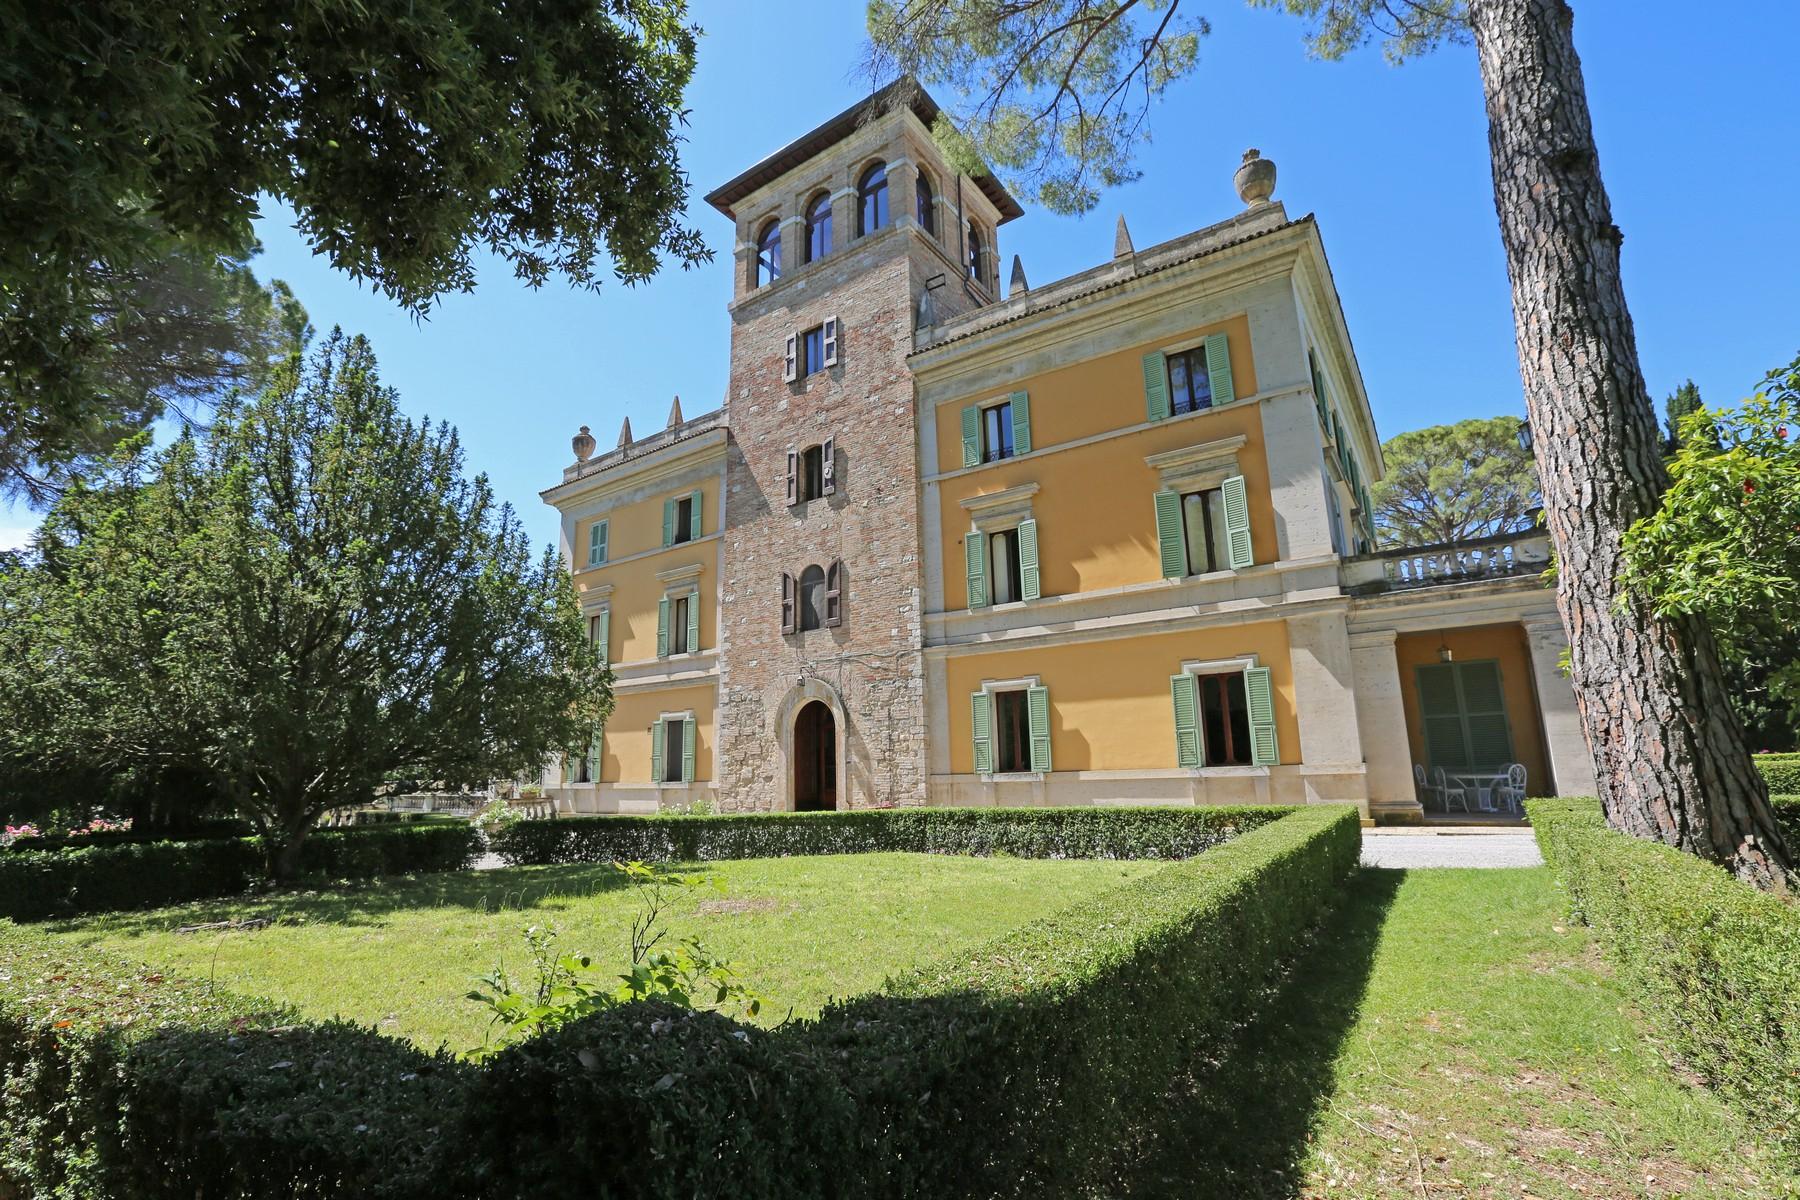 Magnifica Villa storica con giardino all' italiana in Umbria - 3